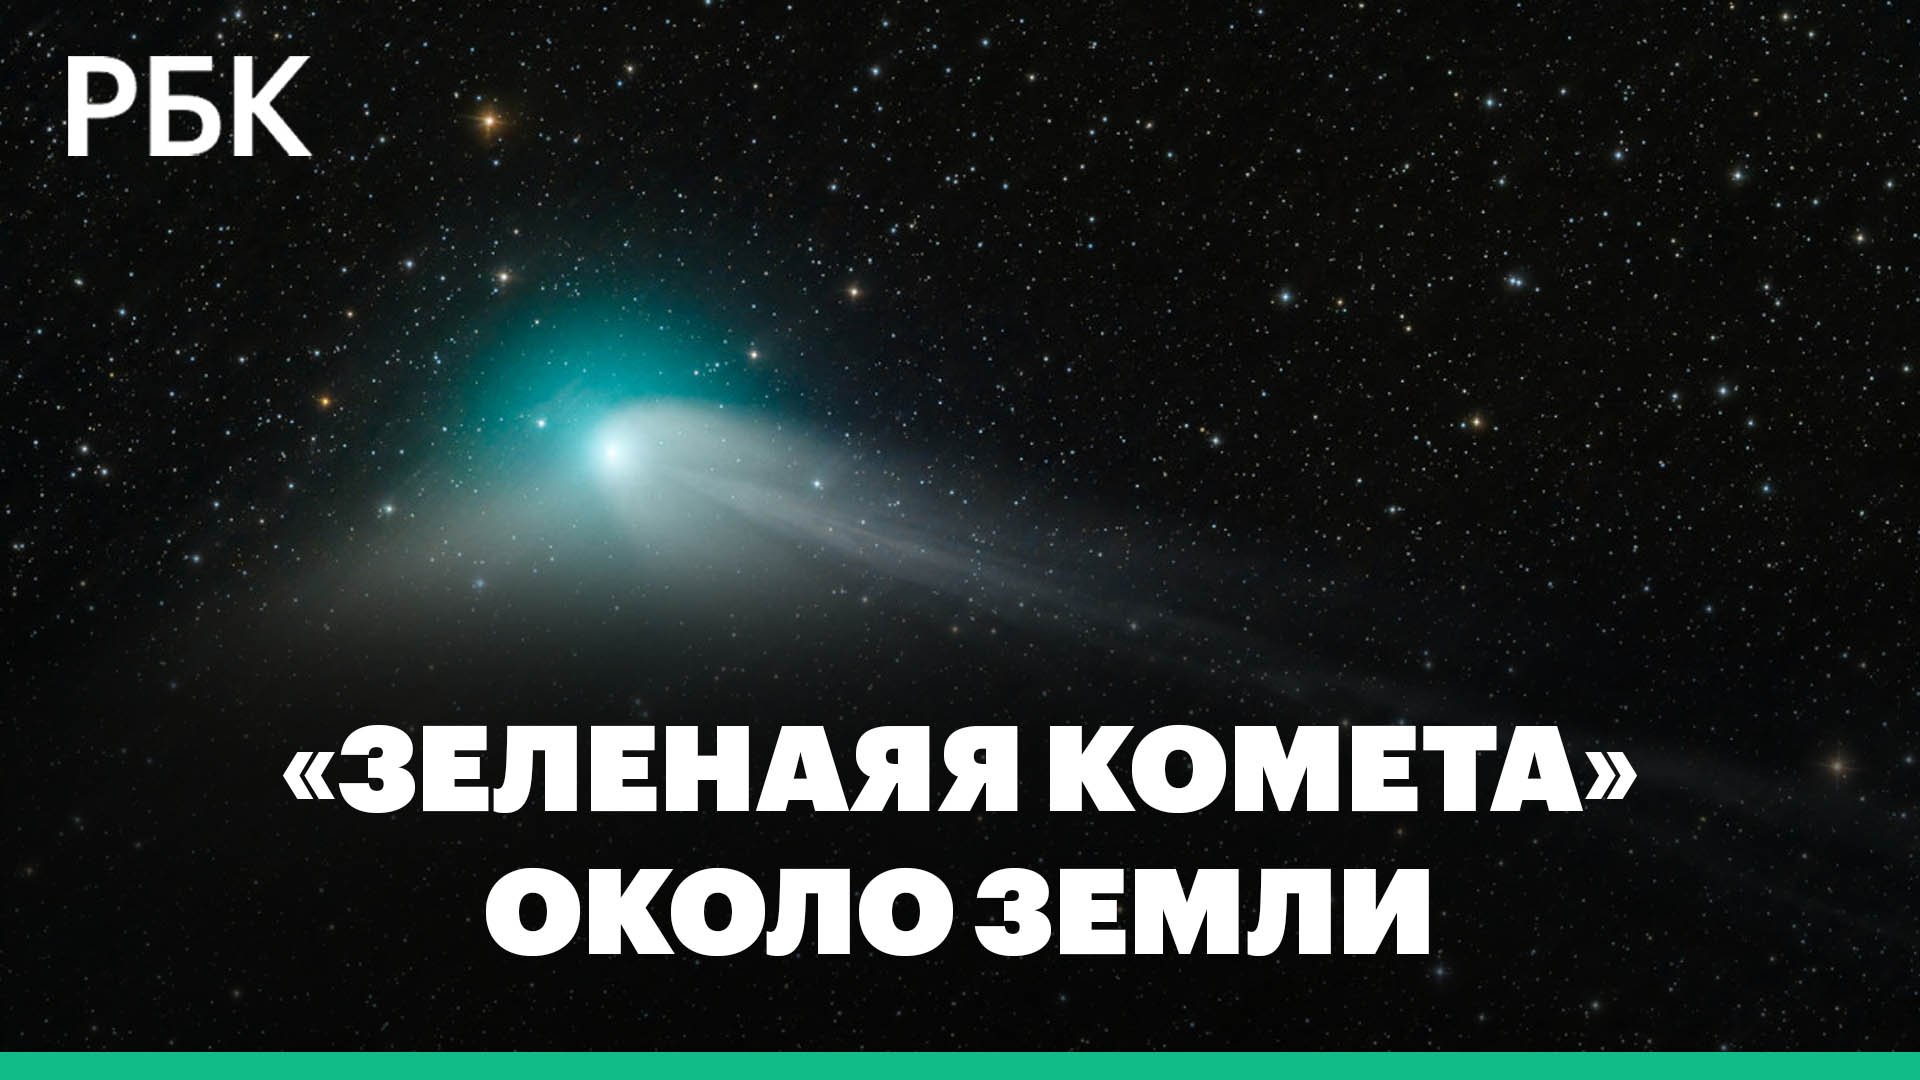 Появление около Земли редкой «зеленой кометы»